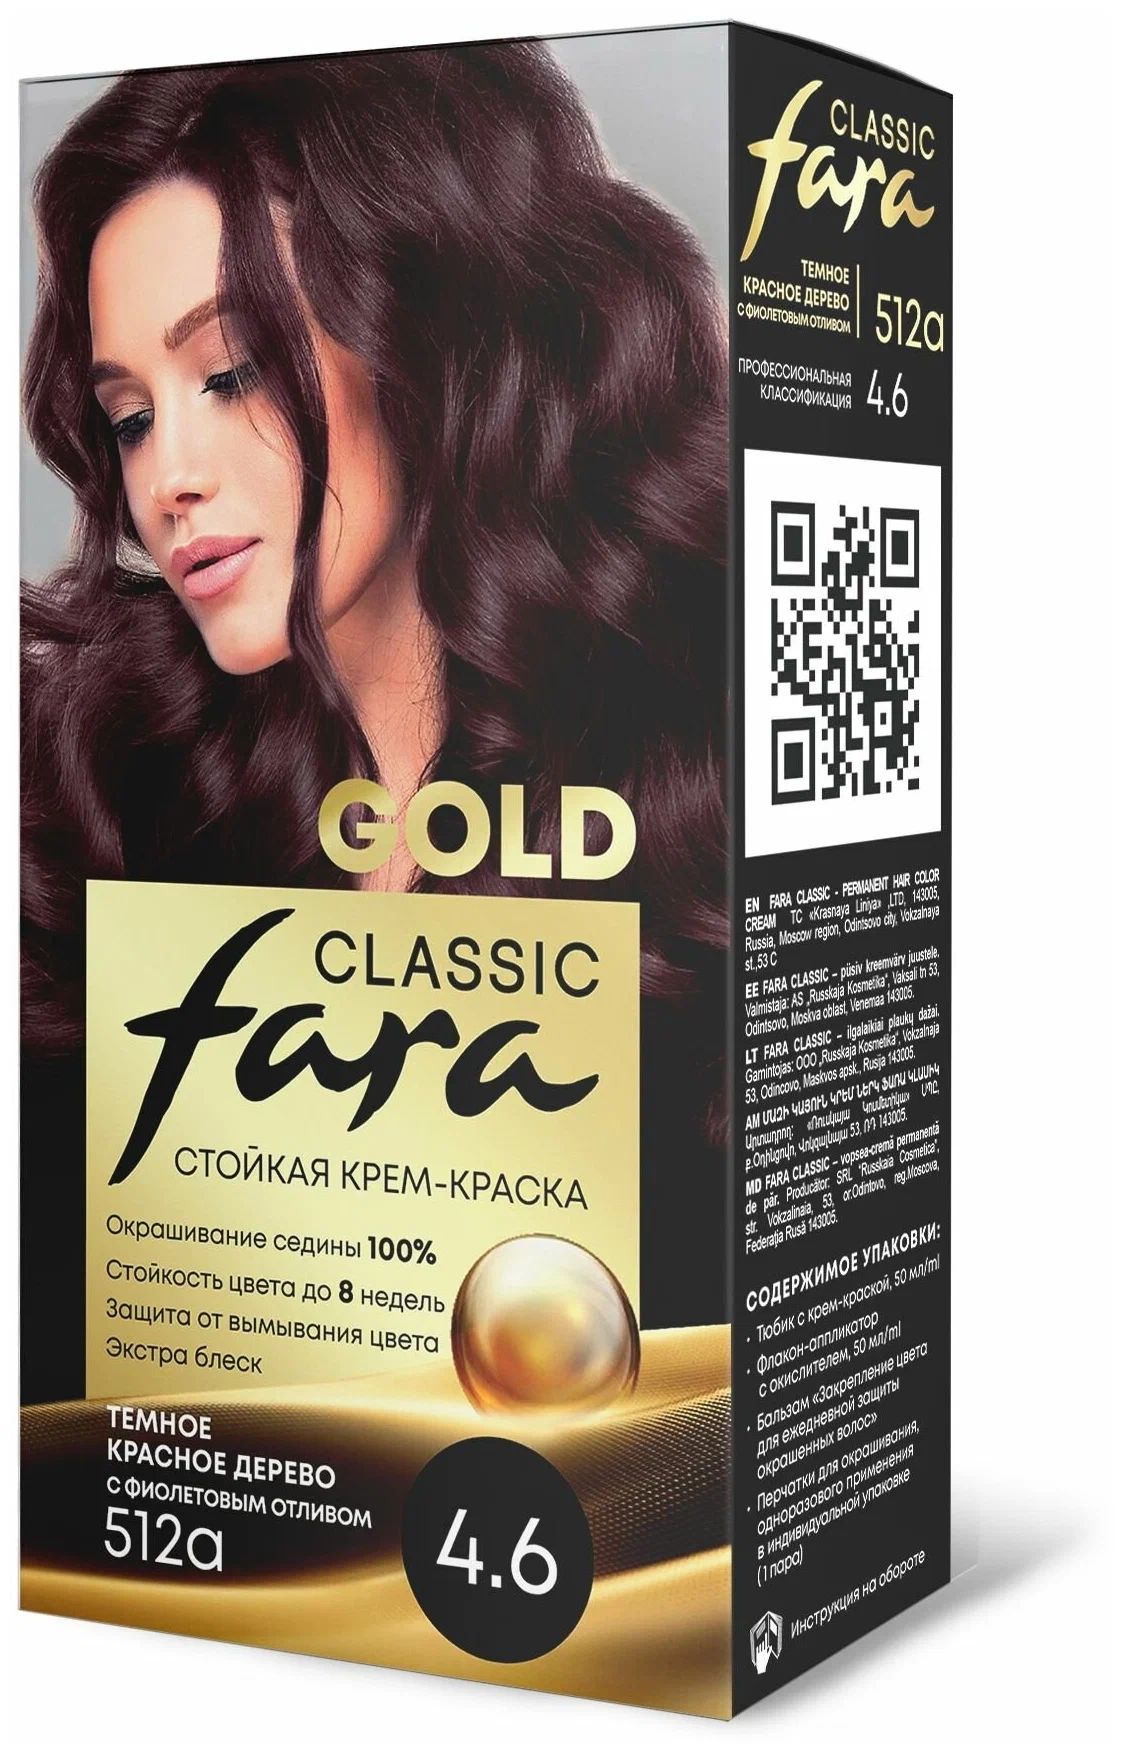 Крем-краска для волос Fara Classic Gold 512А красное дерево 4.6, 140 г русская голгофа политические репрессии в югре